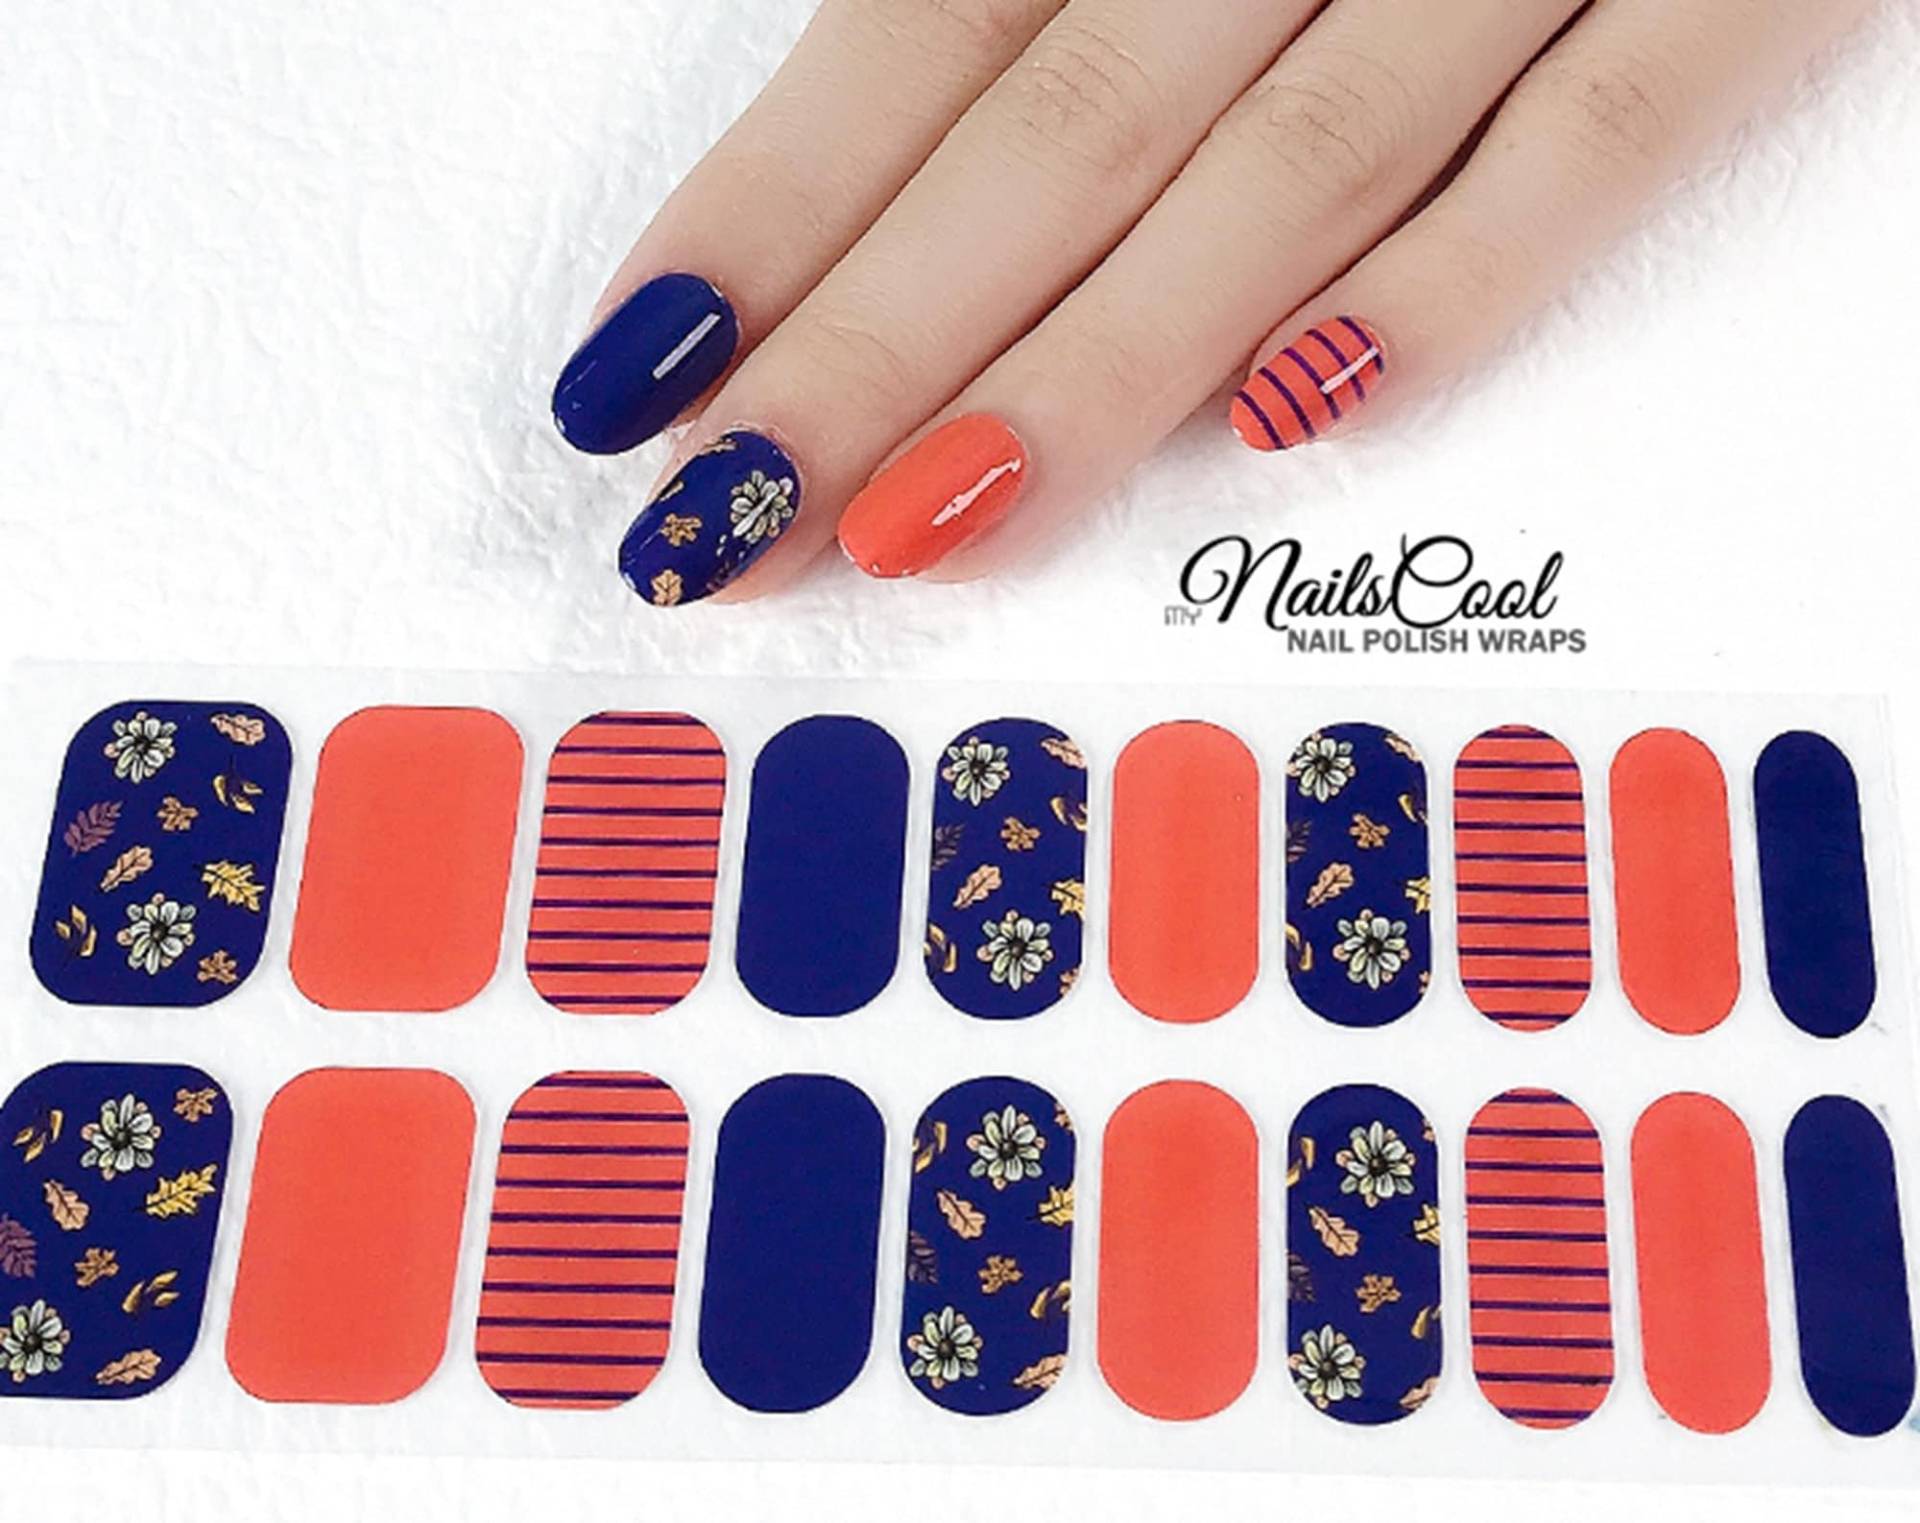 Orange & Indigo Blaue Farbe Echte Nagellack Streifen Nailart Wraps Street Art Design Blumen Blatt Muster 20 von myNailsCool